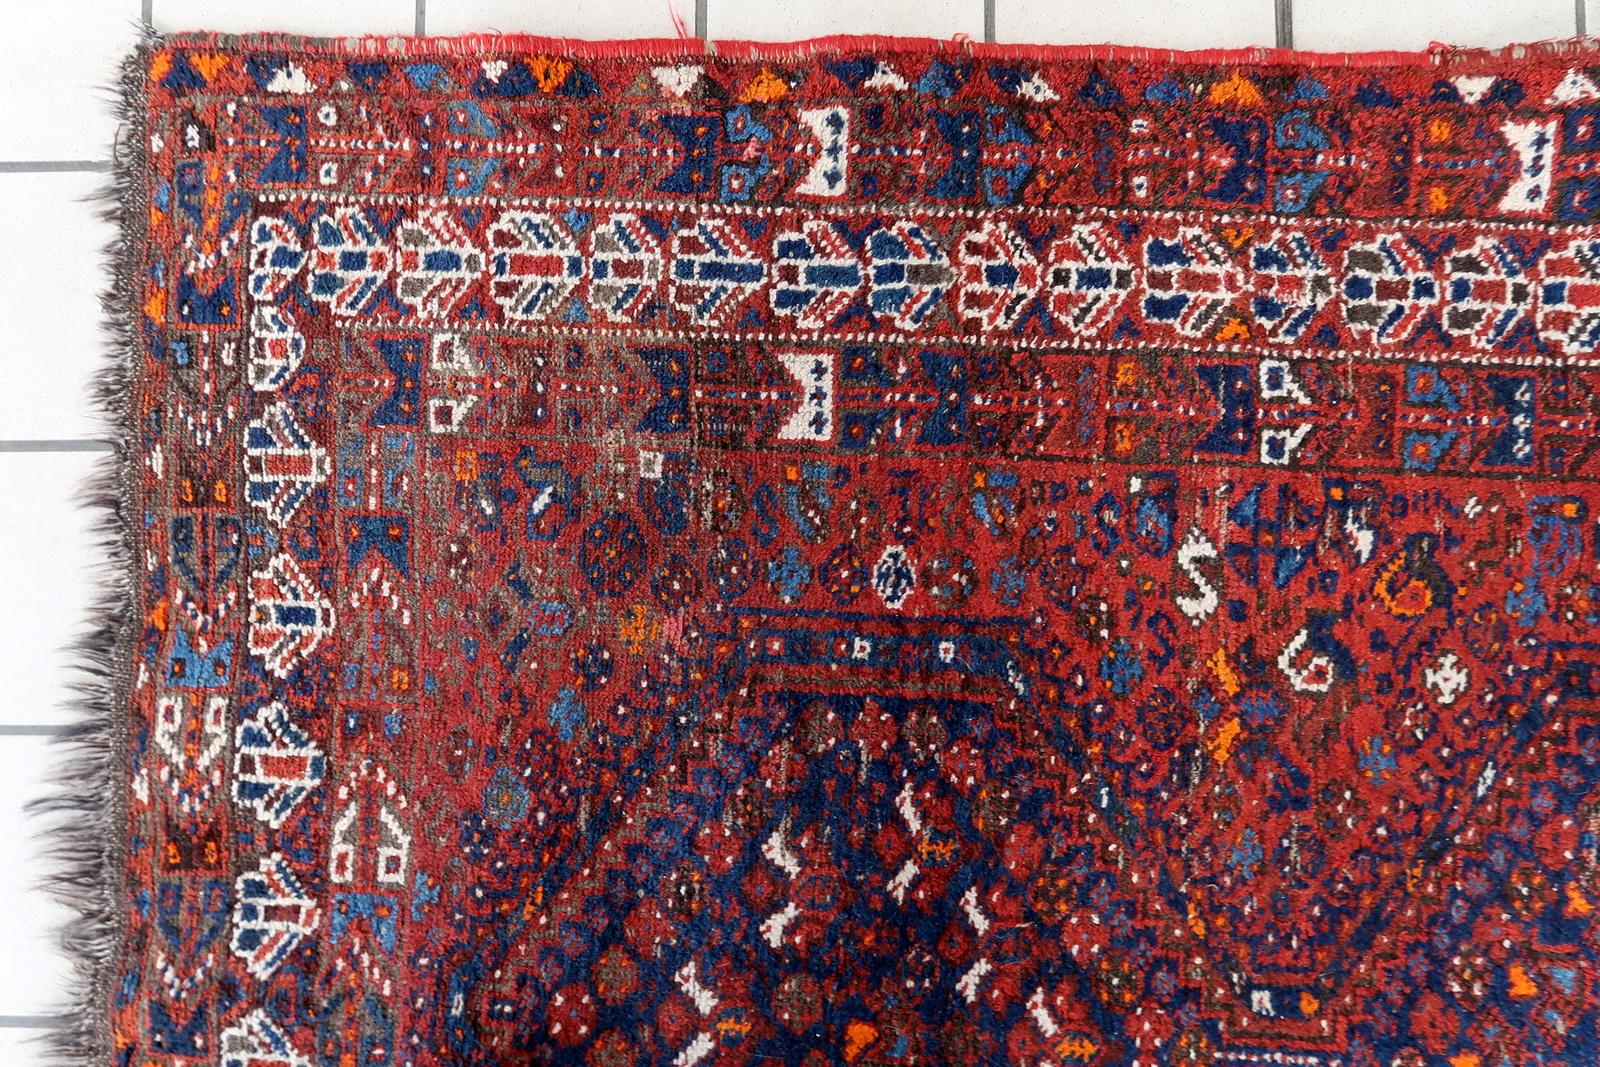 Tauchen Sie ein in die Welt der zeitlosen Schönheit mit unserem handgefertigten antiken persischen Khamseh-Teppich aus den 1920er Jahren. Mit den Maßen 4,3' x 6,6' (132cm x 203cm) blickt dieser Teppich auf eine reiche Geschichte und exquisite